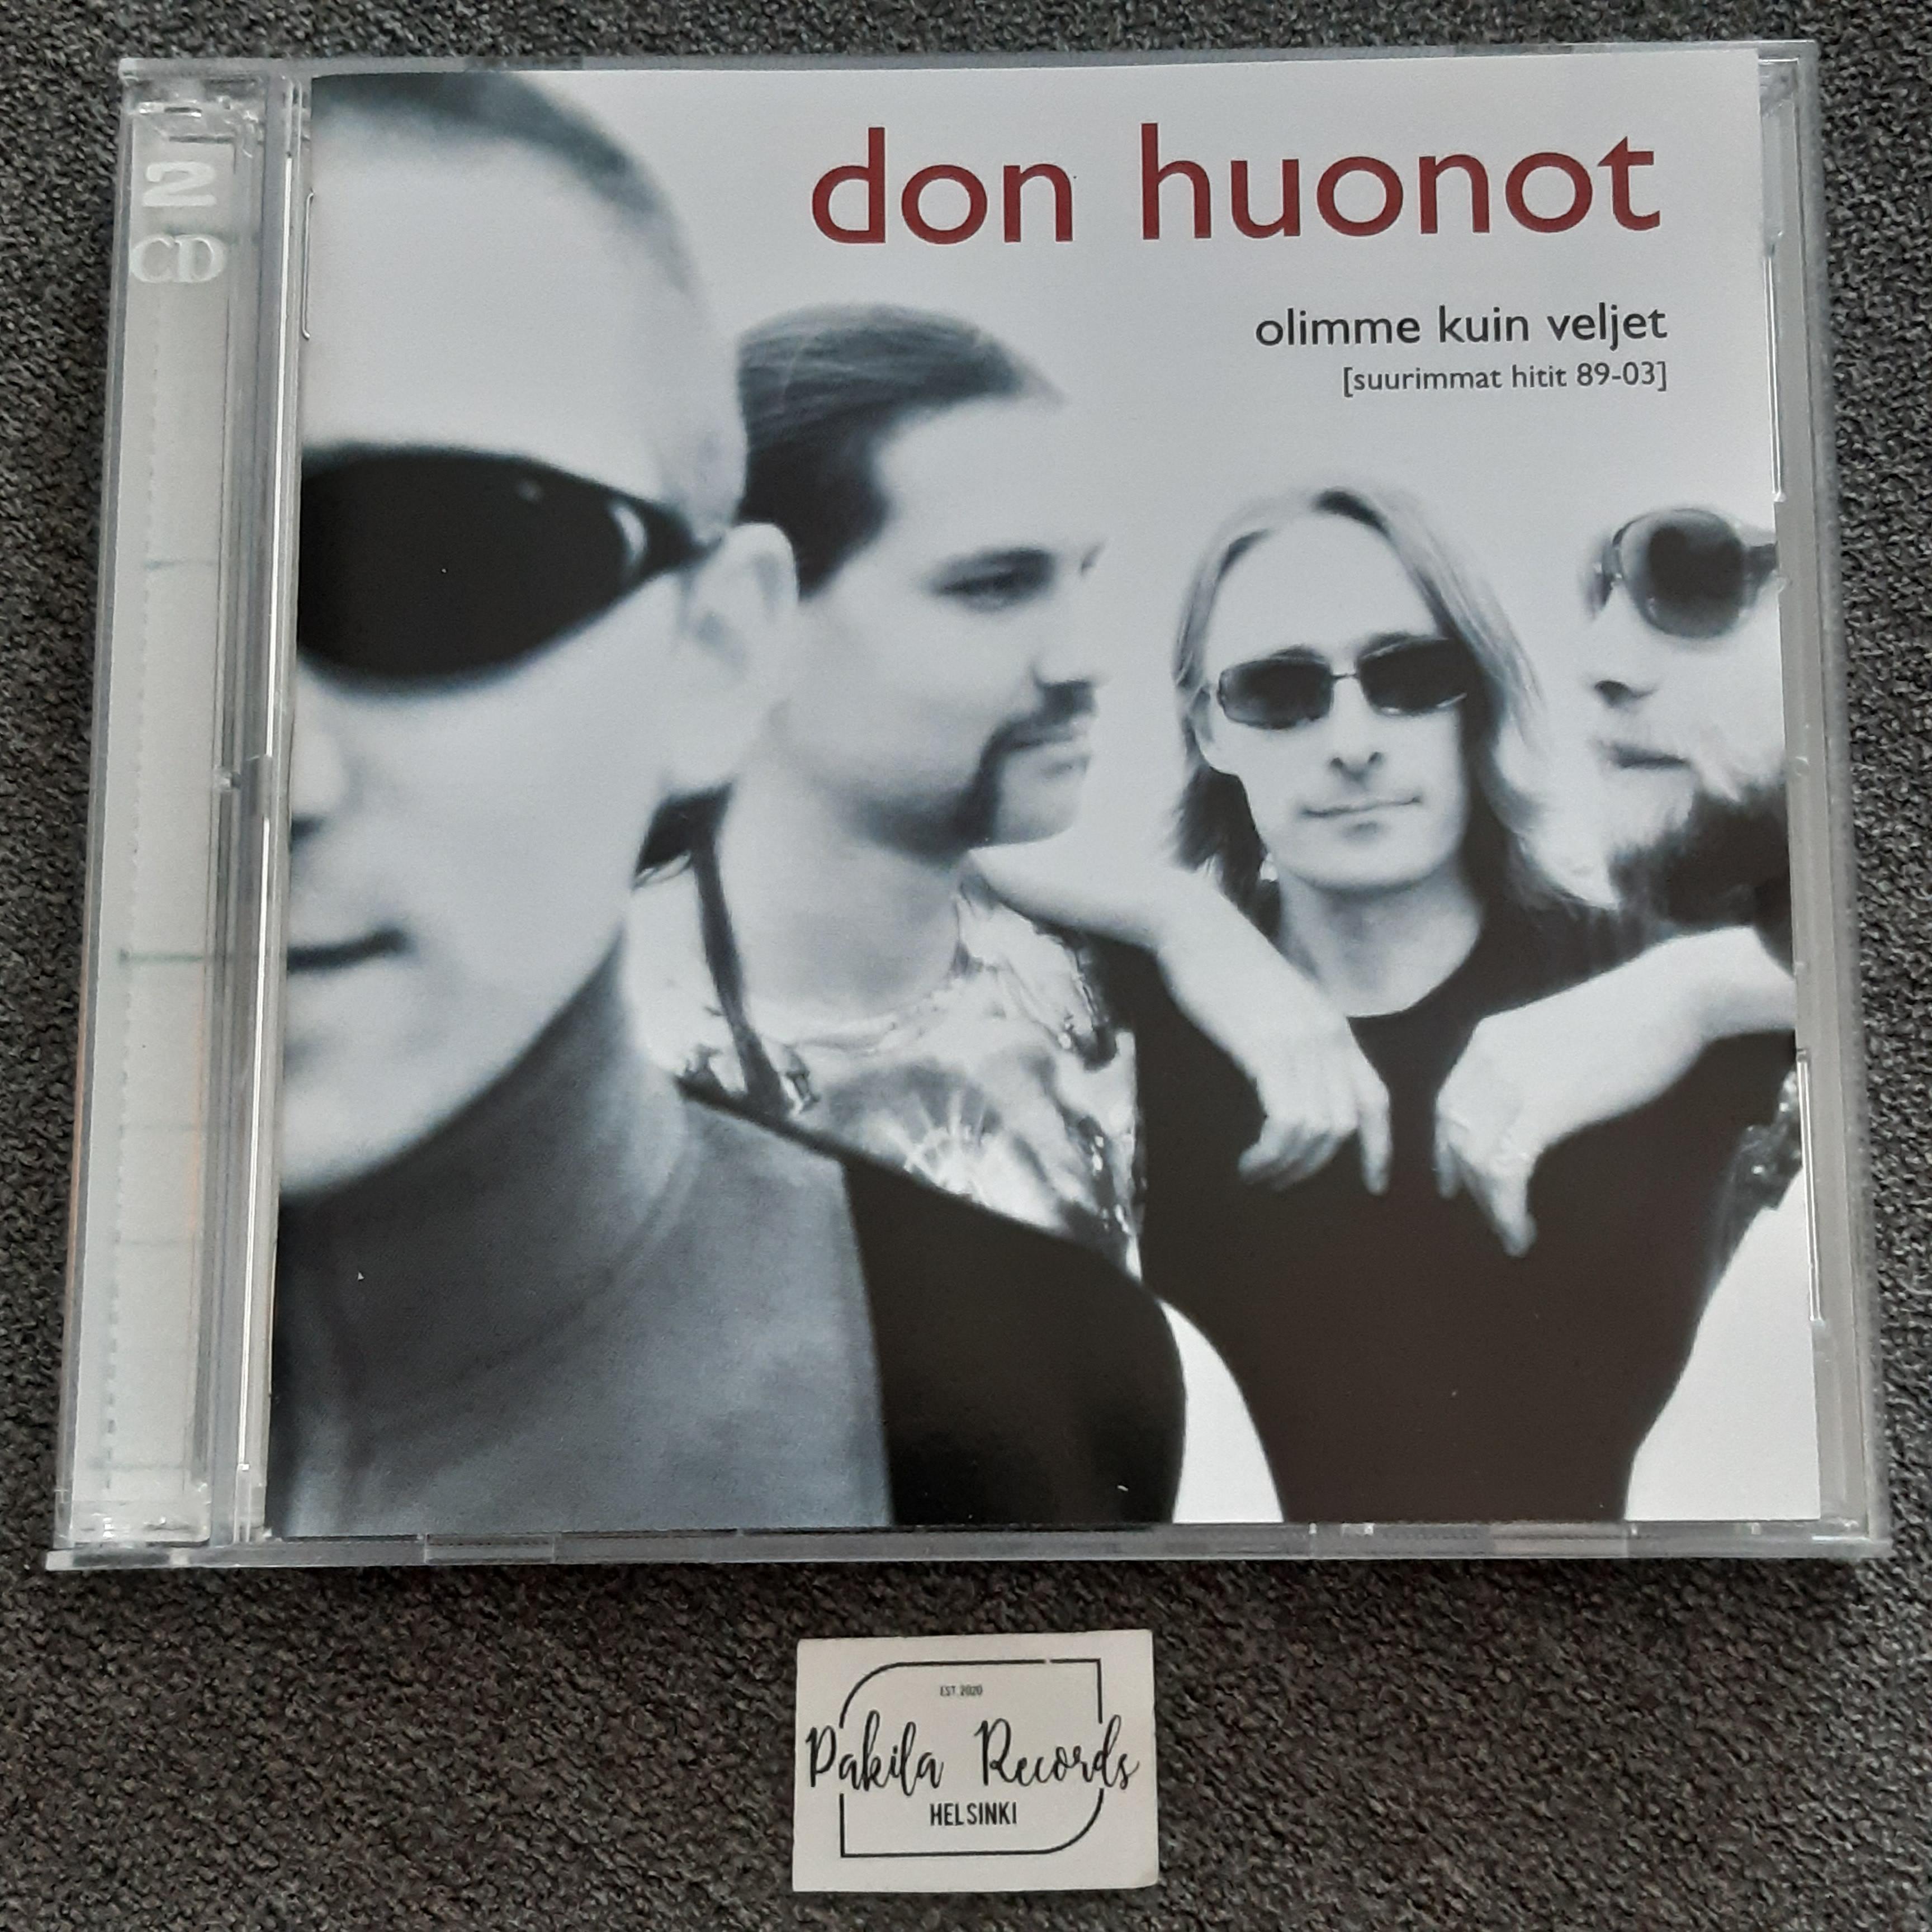 Don Huonot - Olimme kuin veljet, Suurimmat hitit 89-03 - 2 CD (käytetty)